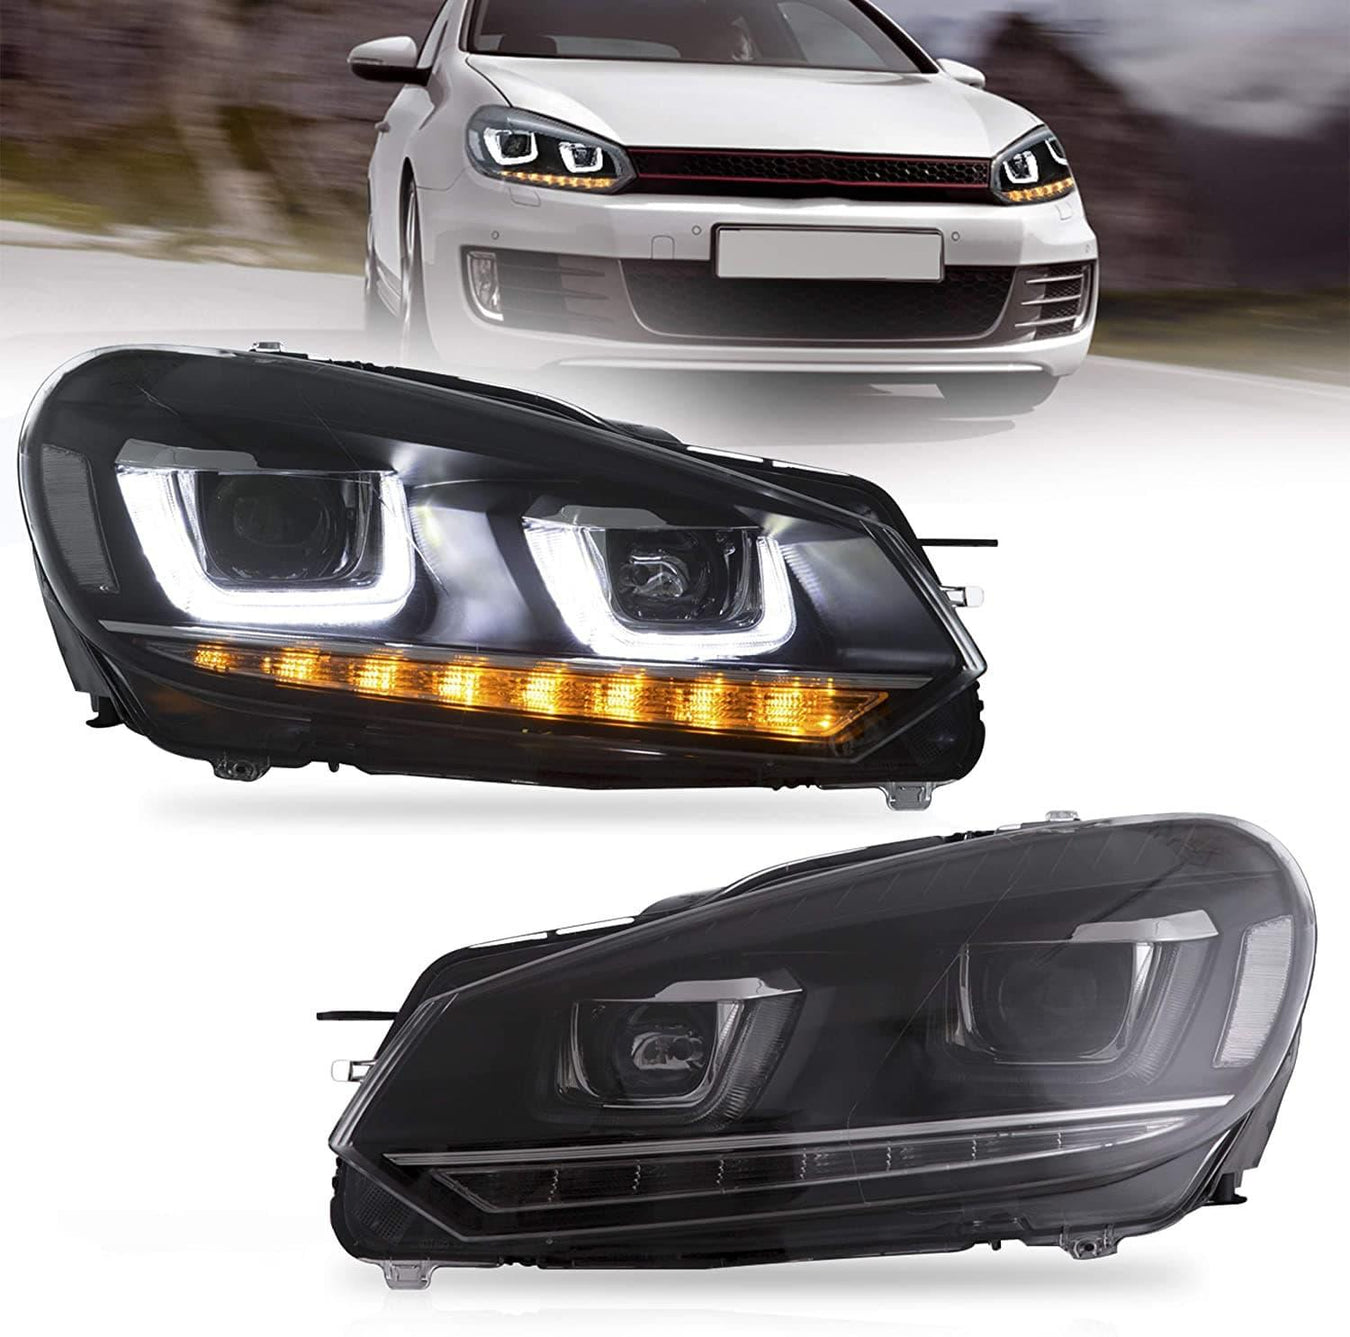 Volkswagen Headlights